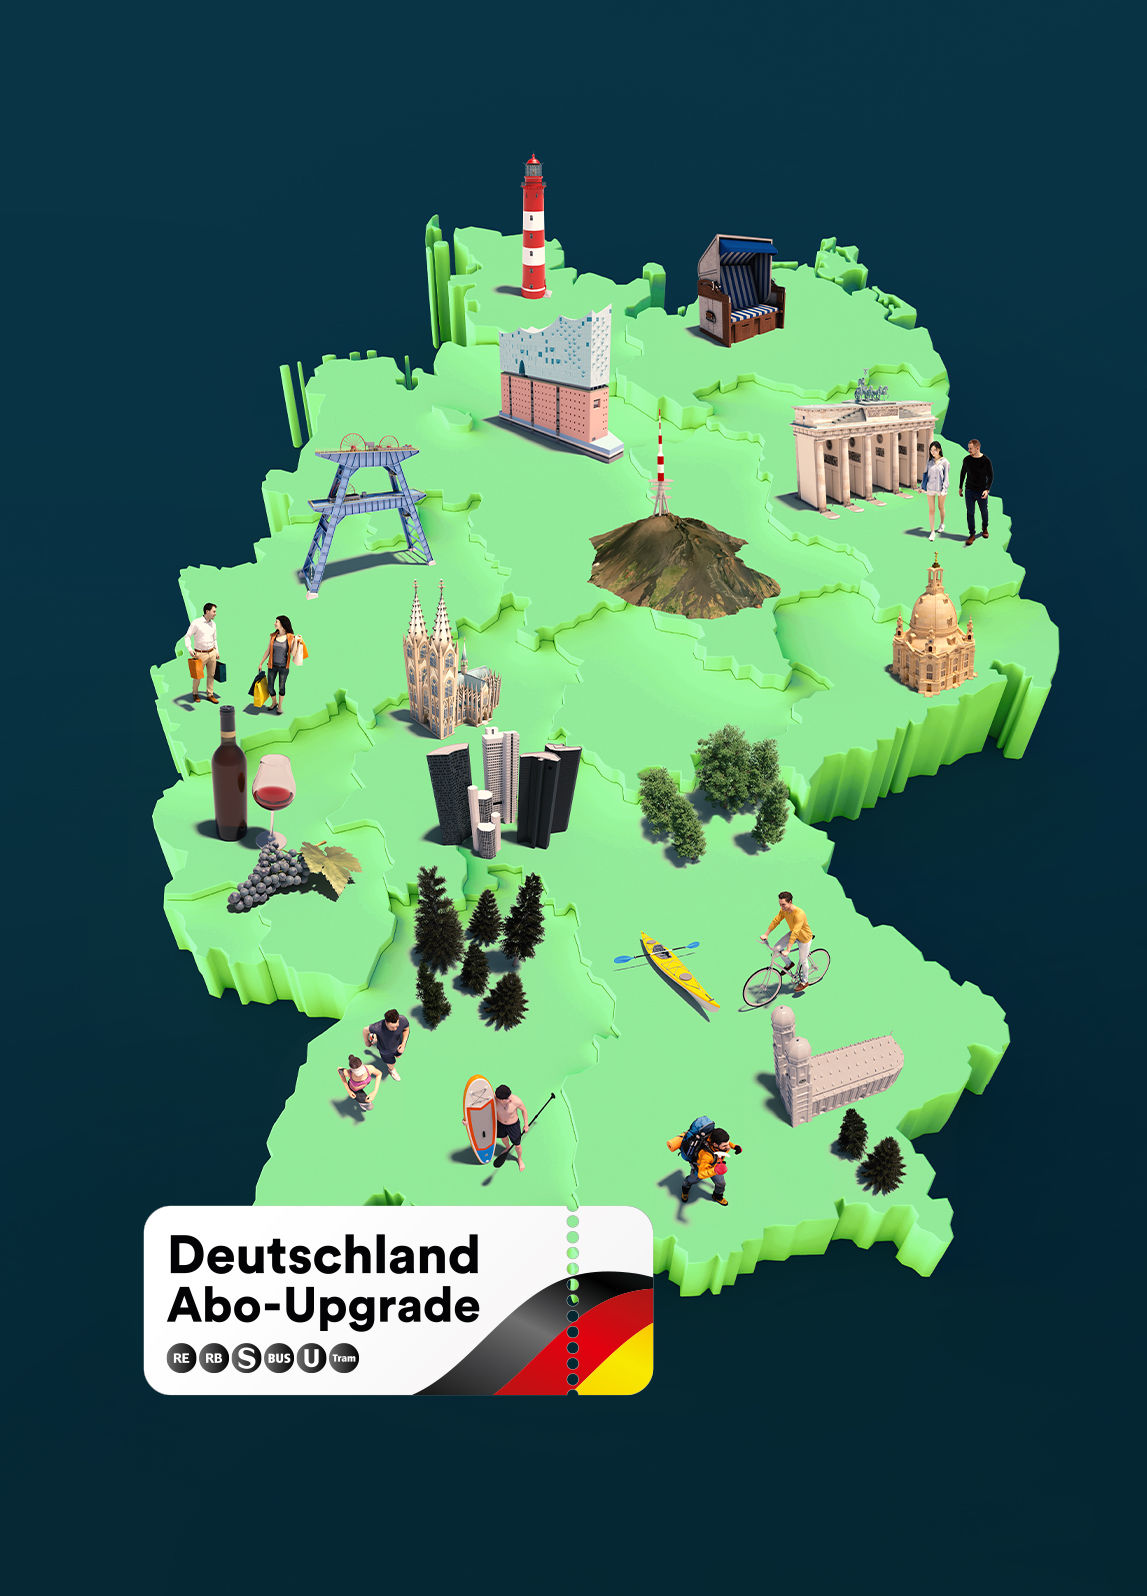 Deutschlandkarte mit Ticket zum Abo-Upgrade